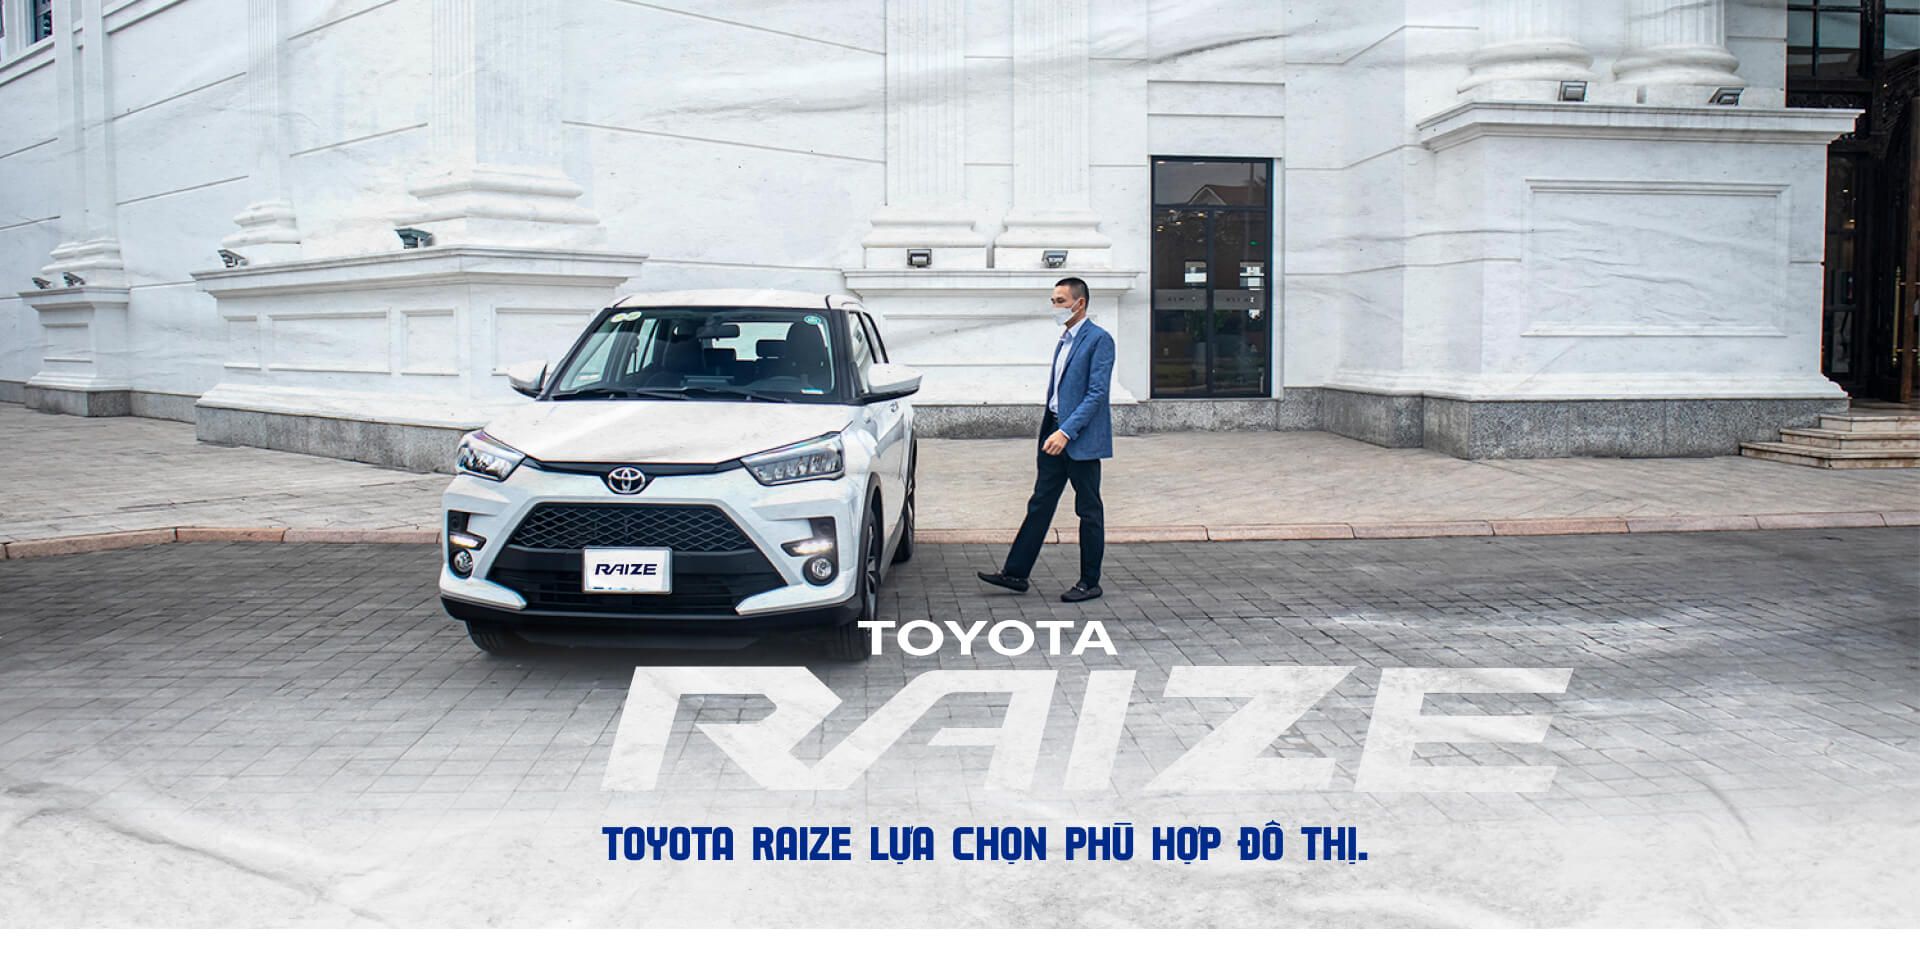 Đang dùng Corolla Cross nhưng vẫn quyết định mua thêm Toyota Raize